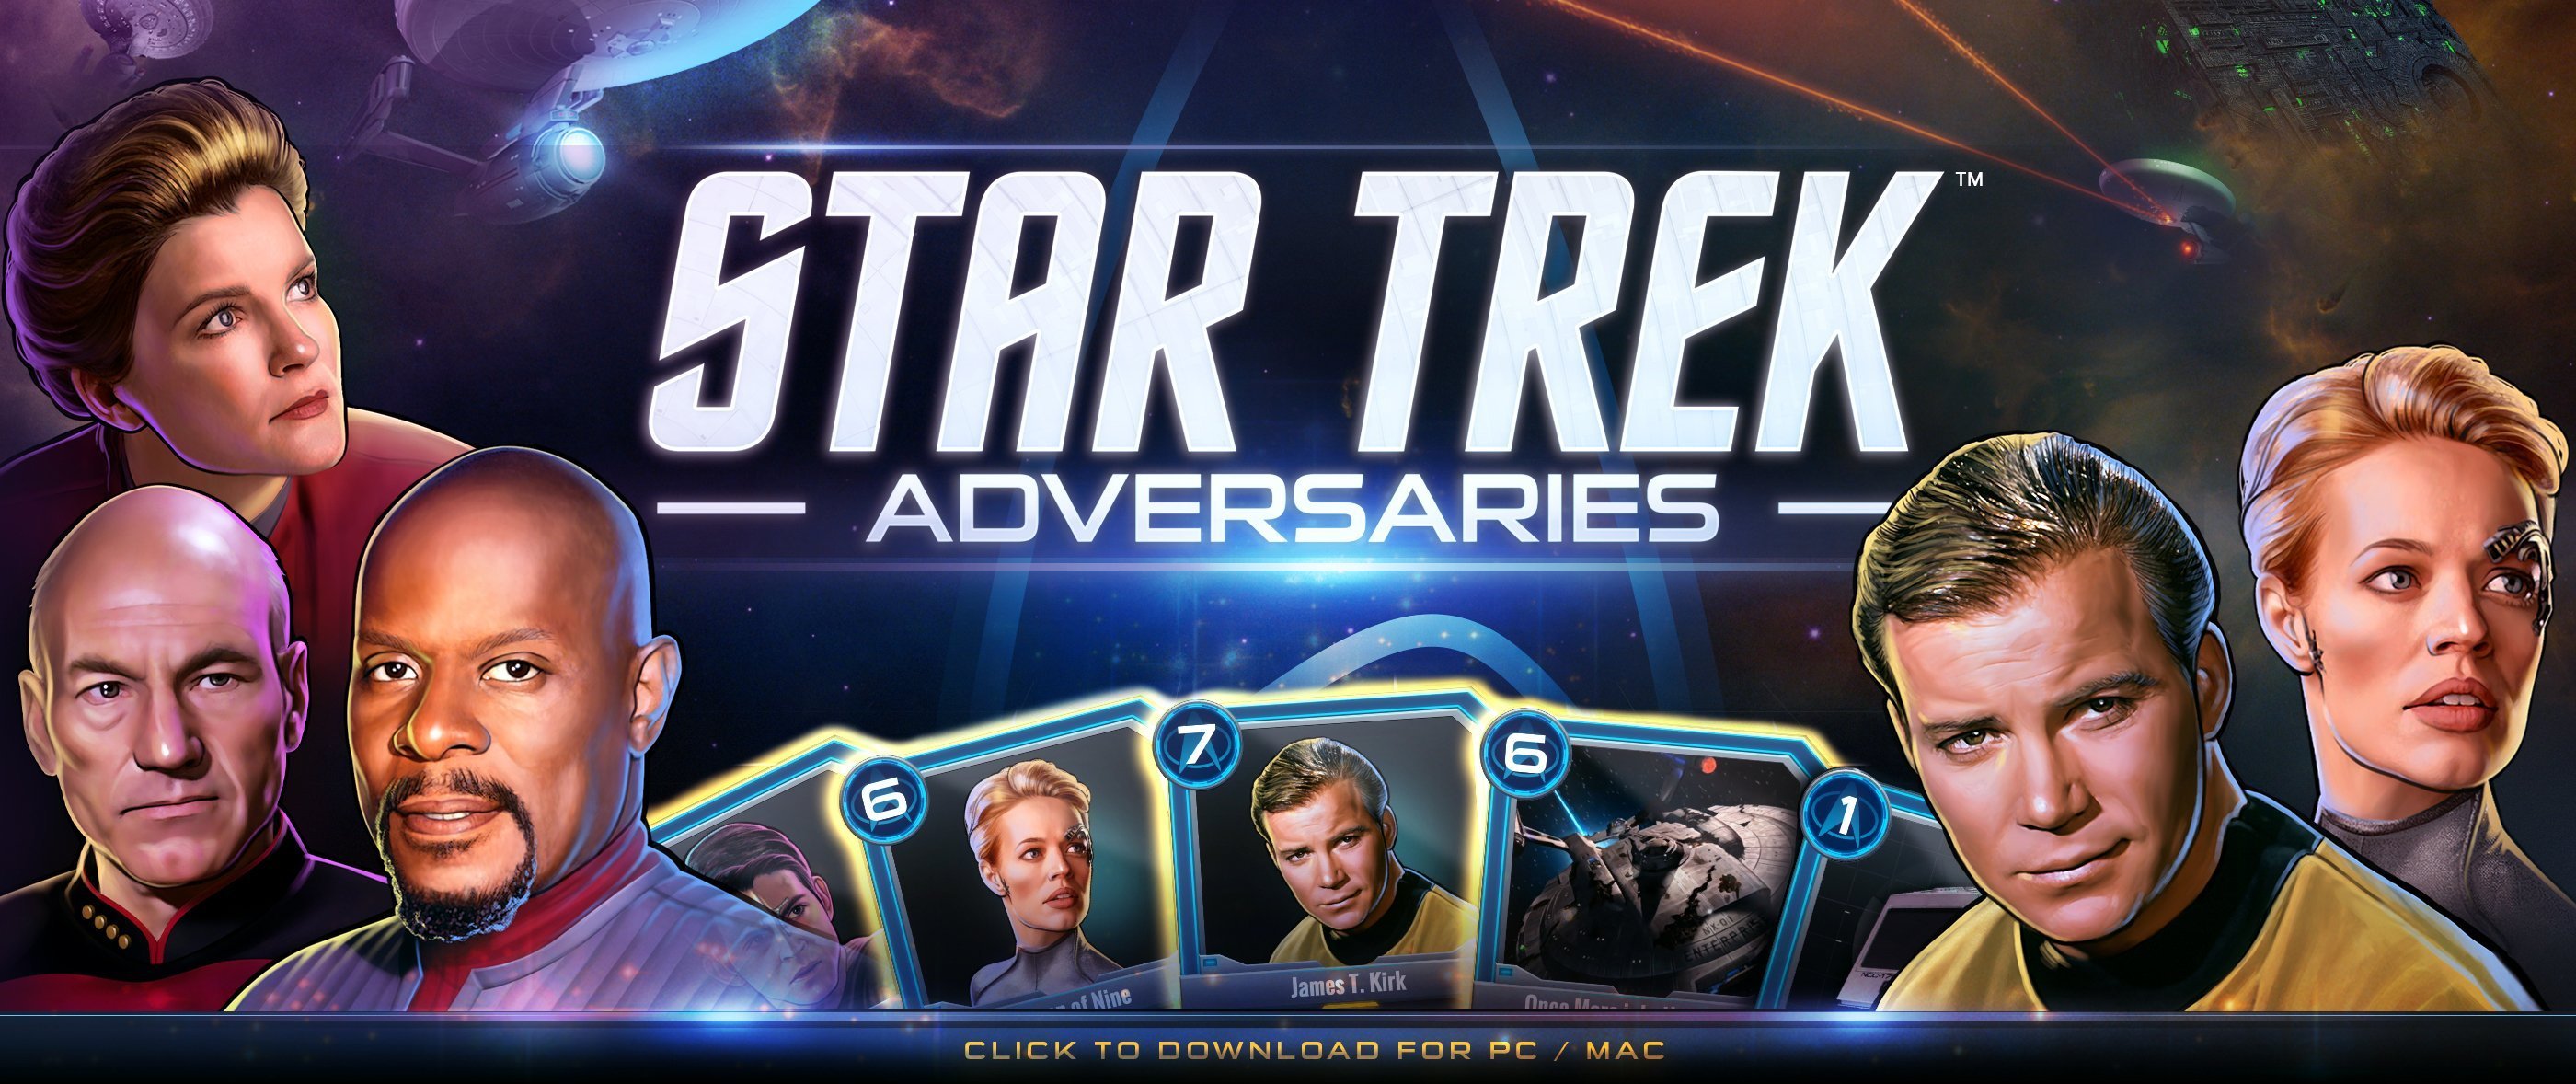 Star trek game downloads free